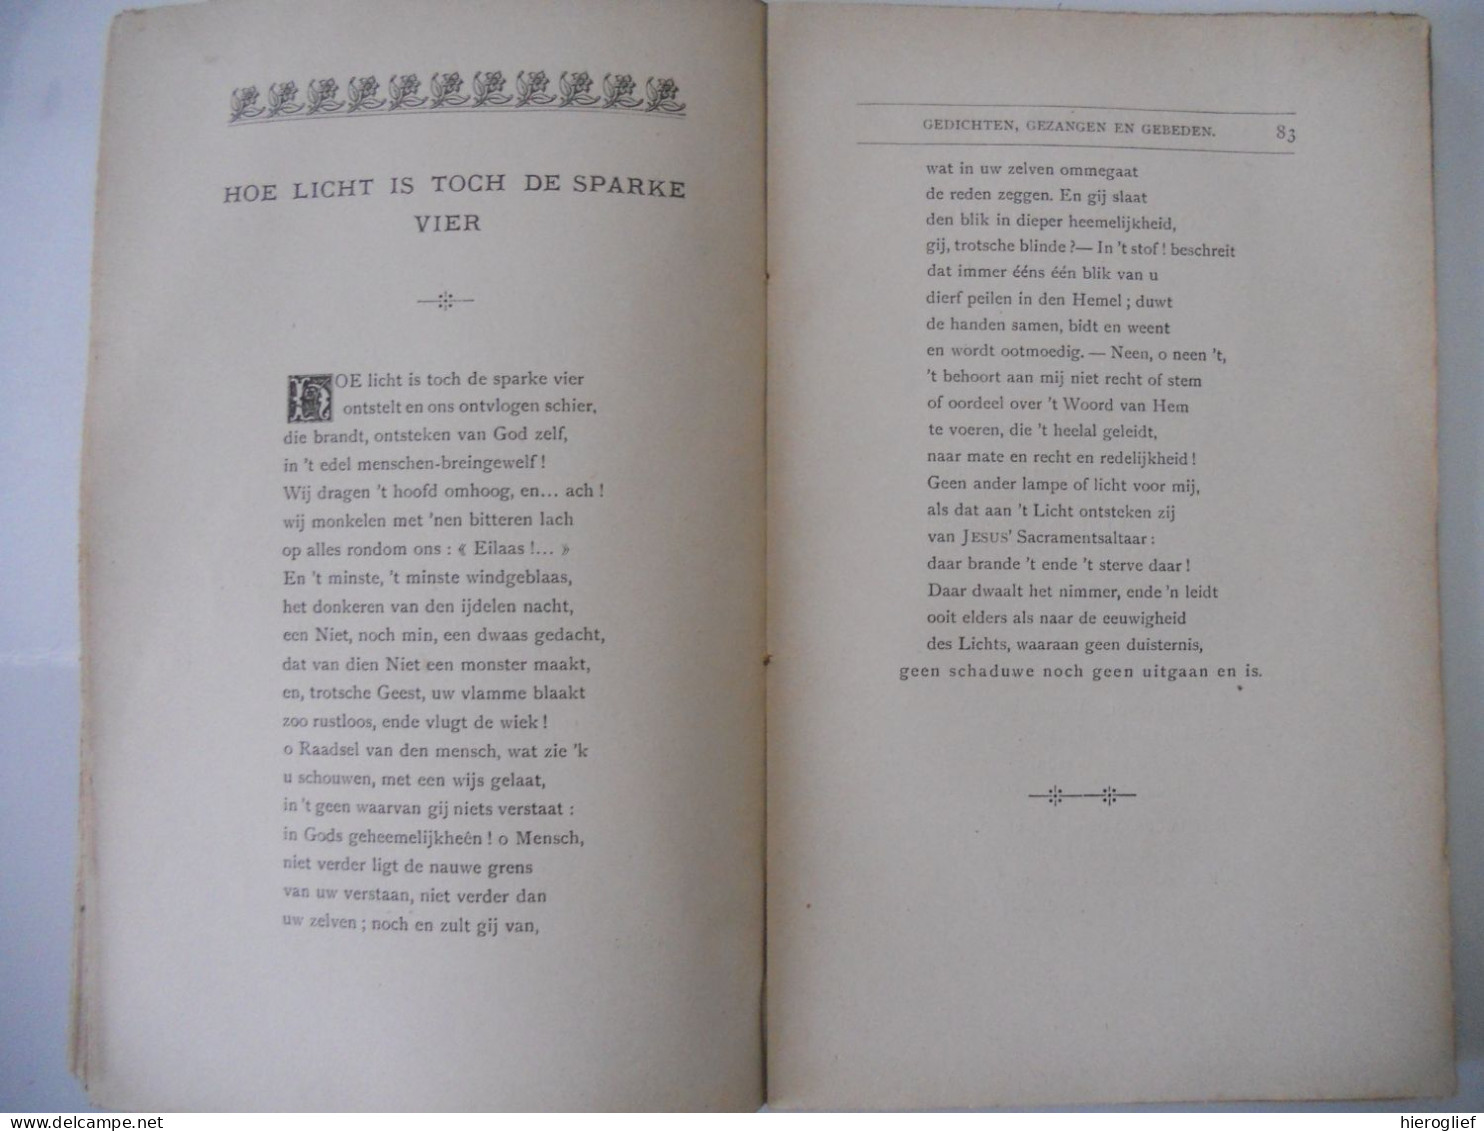 Gedichten Gezangen & Gebeden - Kleengedichtjes Door Guido Gezelle 1893 Roeselare De Meester / Brugge Kortrijk - Poetry